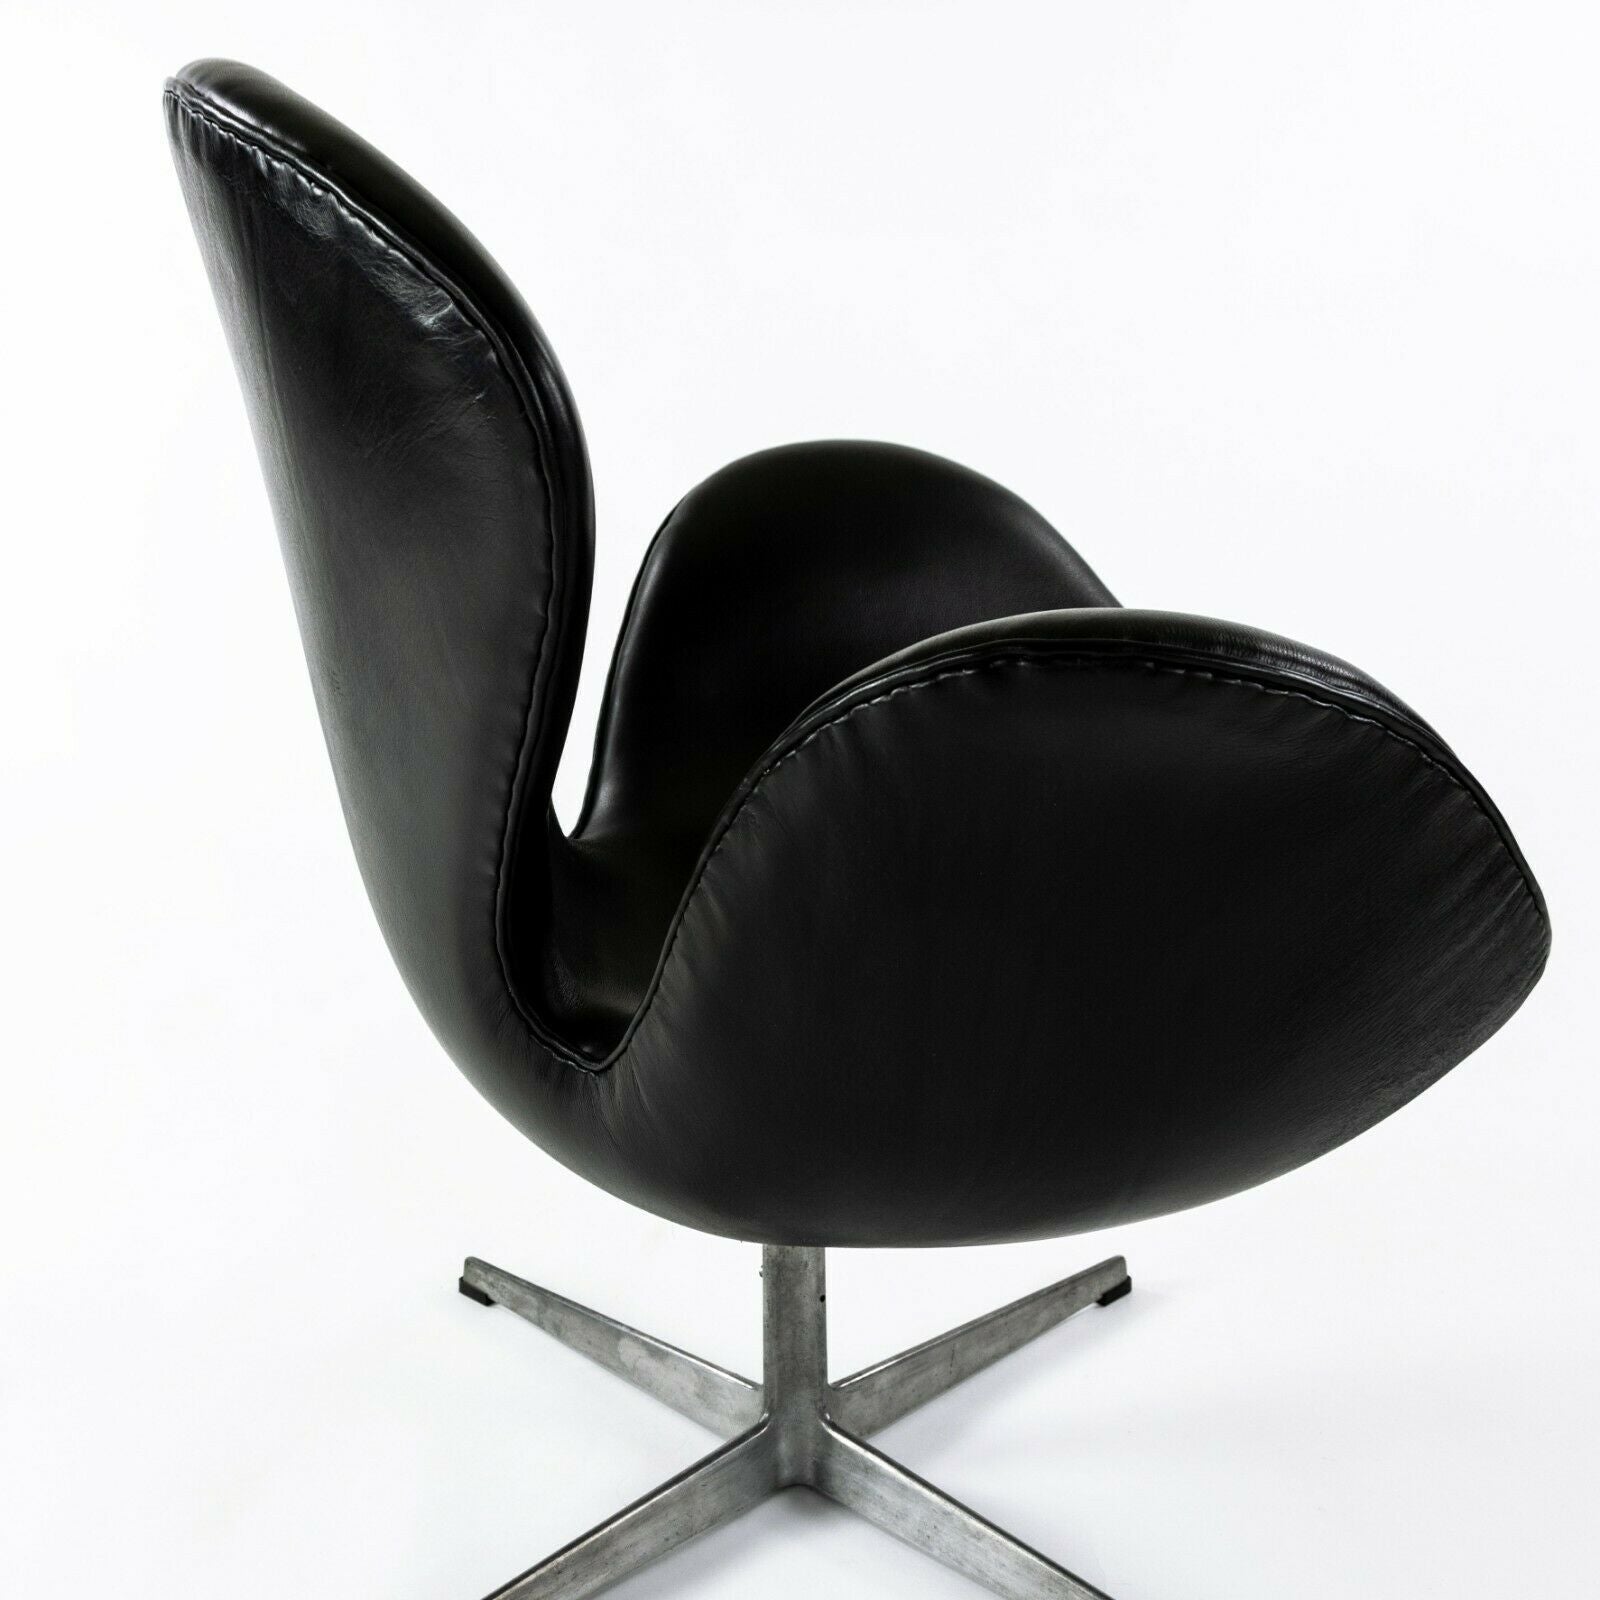 Swan Chair